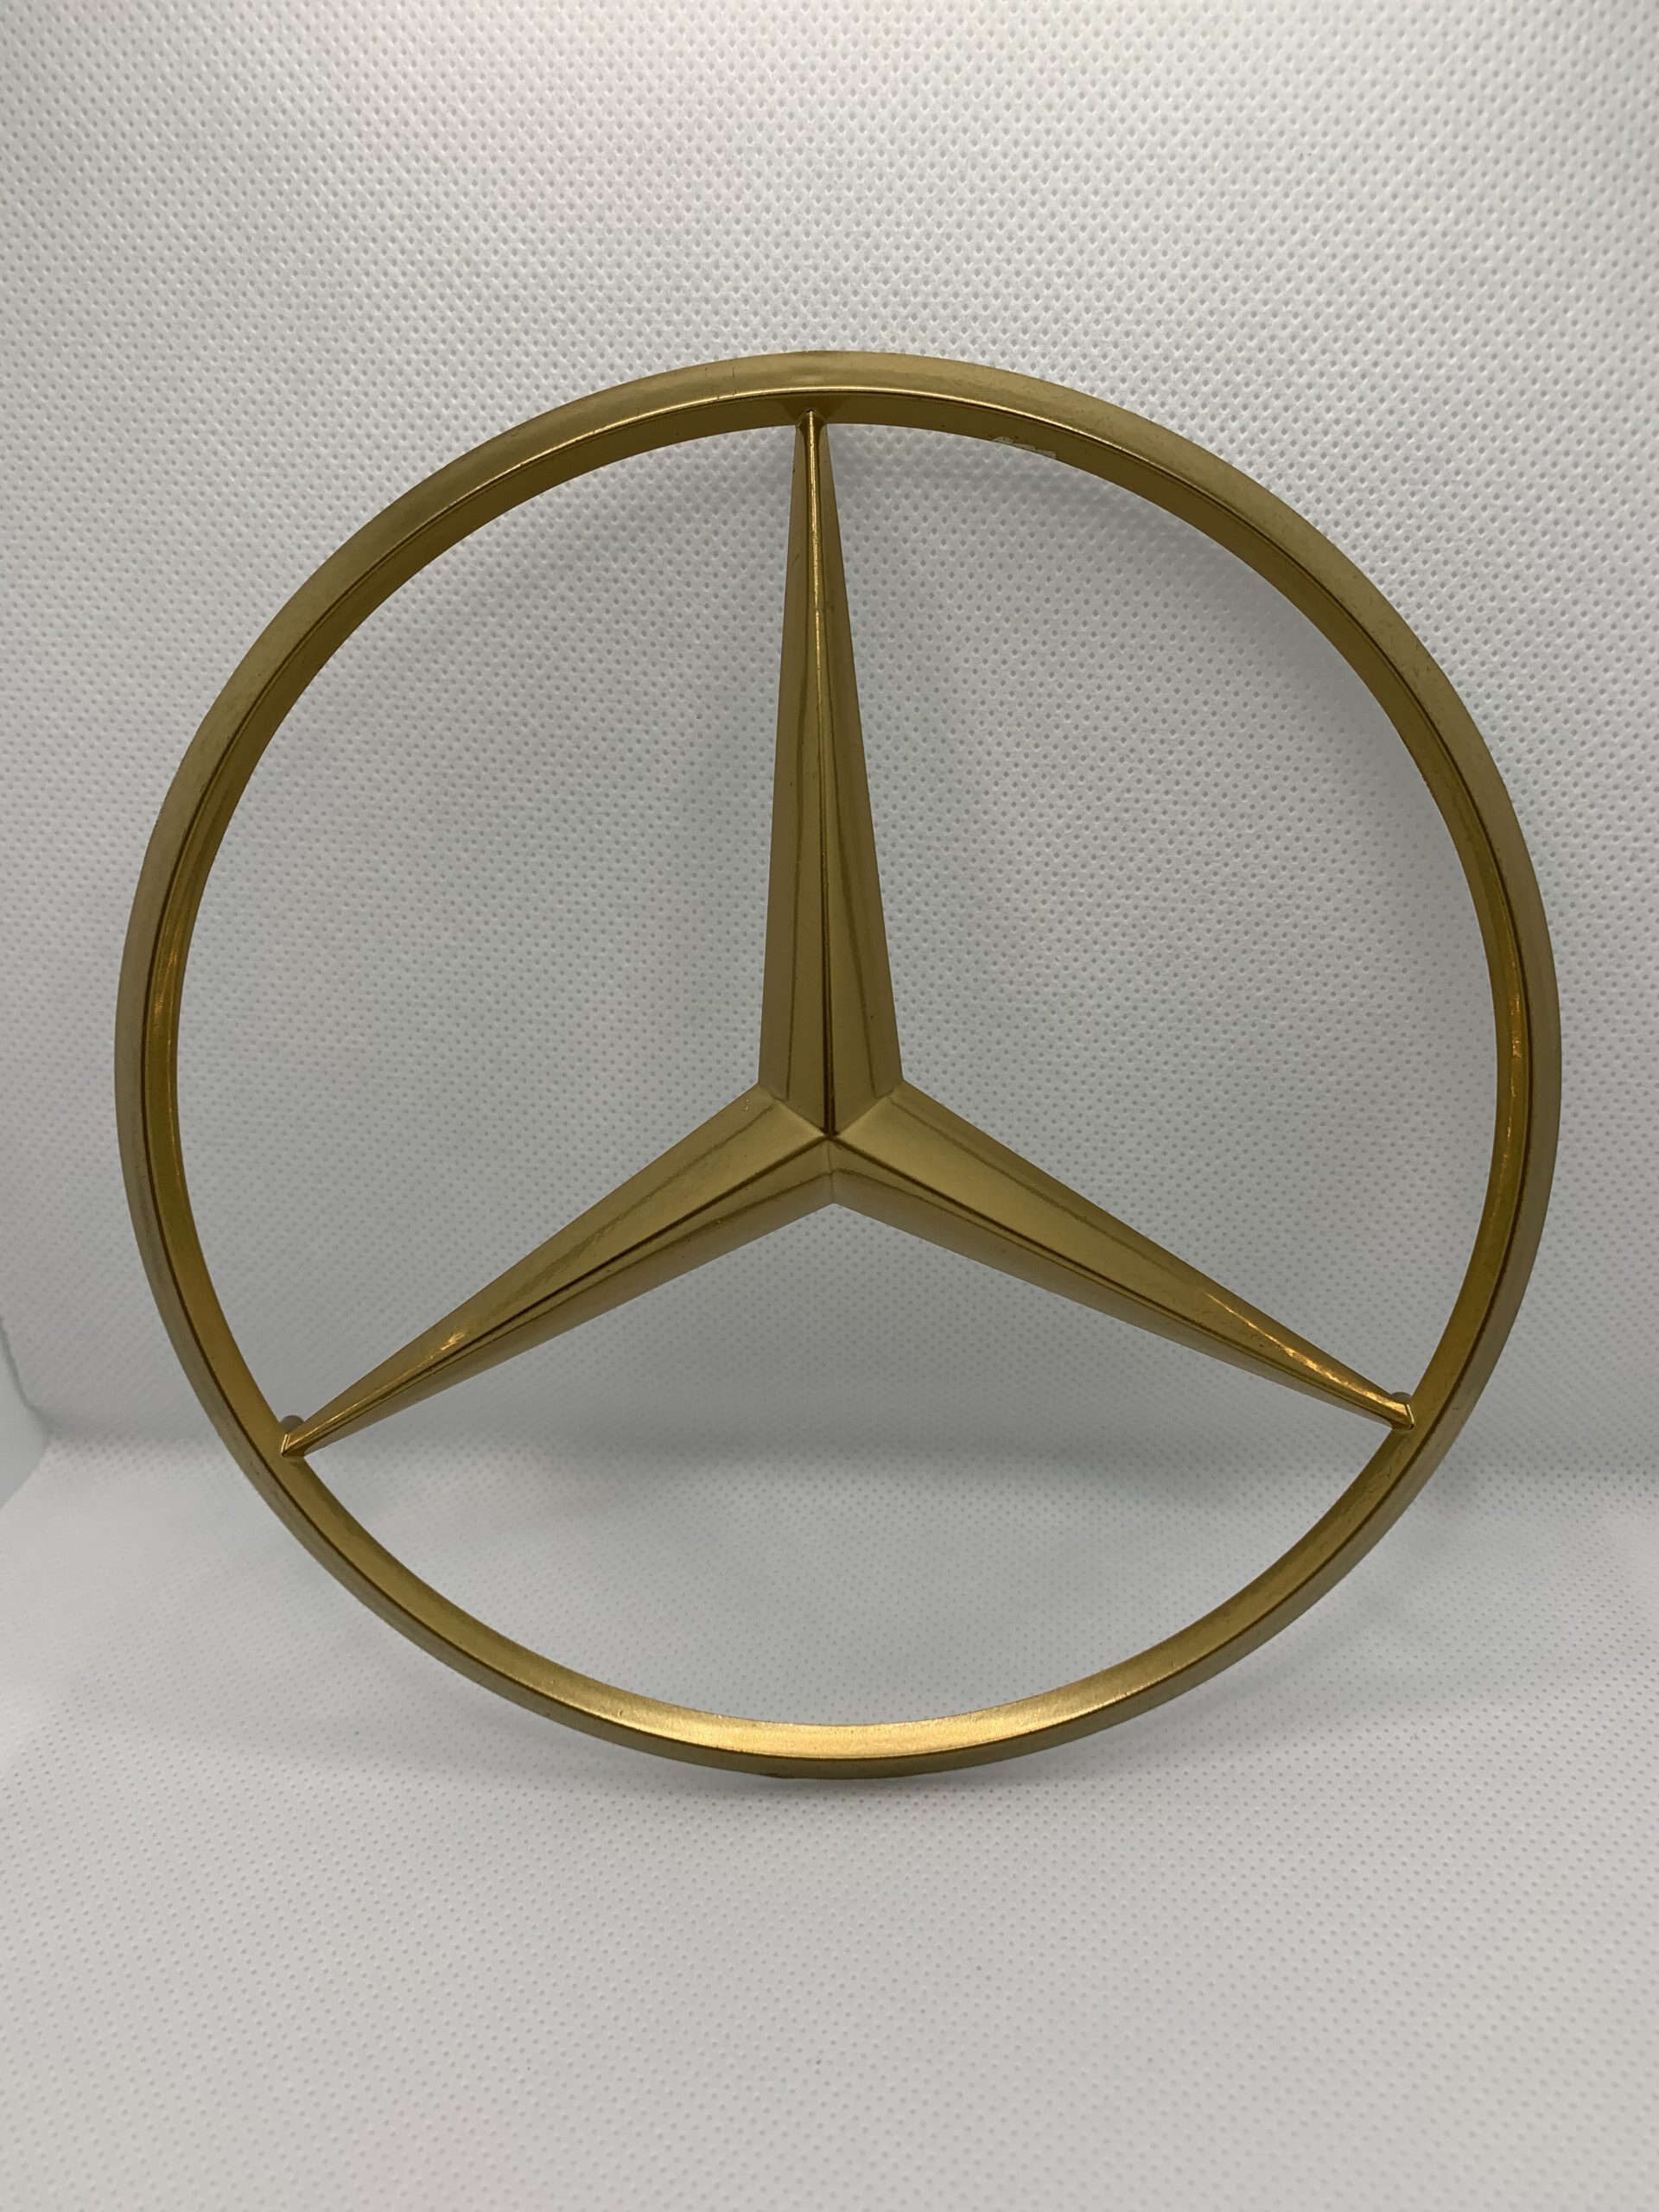 Mercedes-Benz Stern Grill Kühlergrill Emblem – FH Herren AG